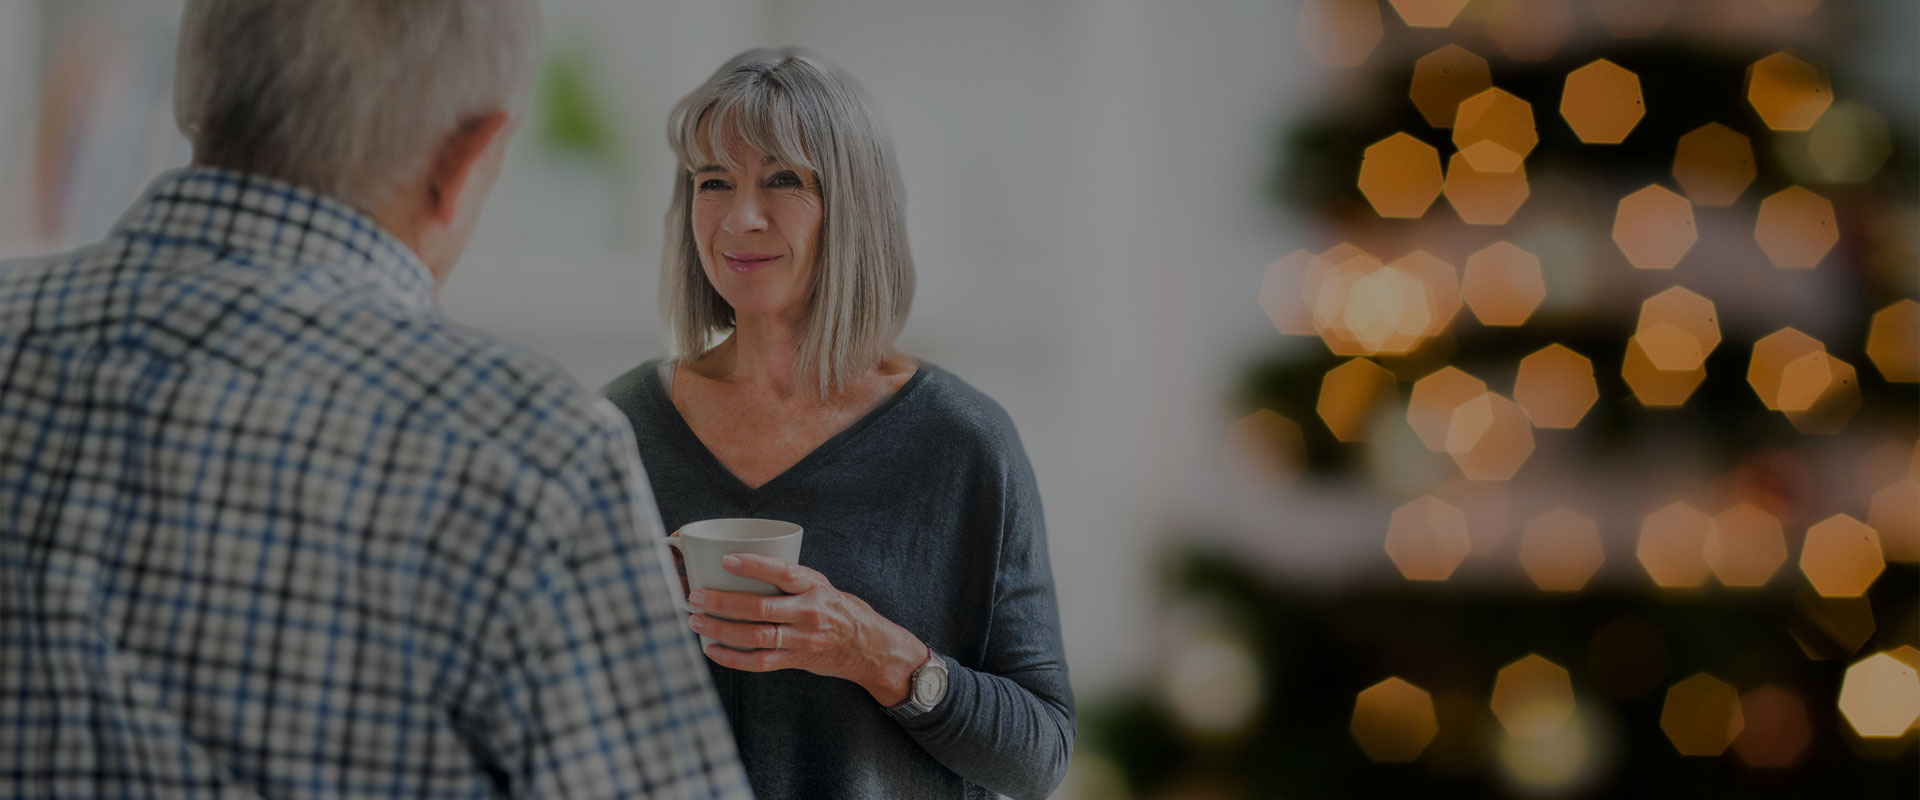 deux personnes un homme et un femme tenant un thé dans ses mains parlent devant un sapin de Noël